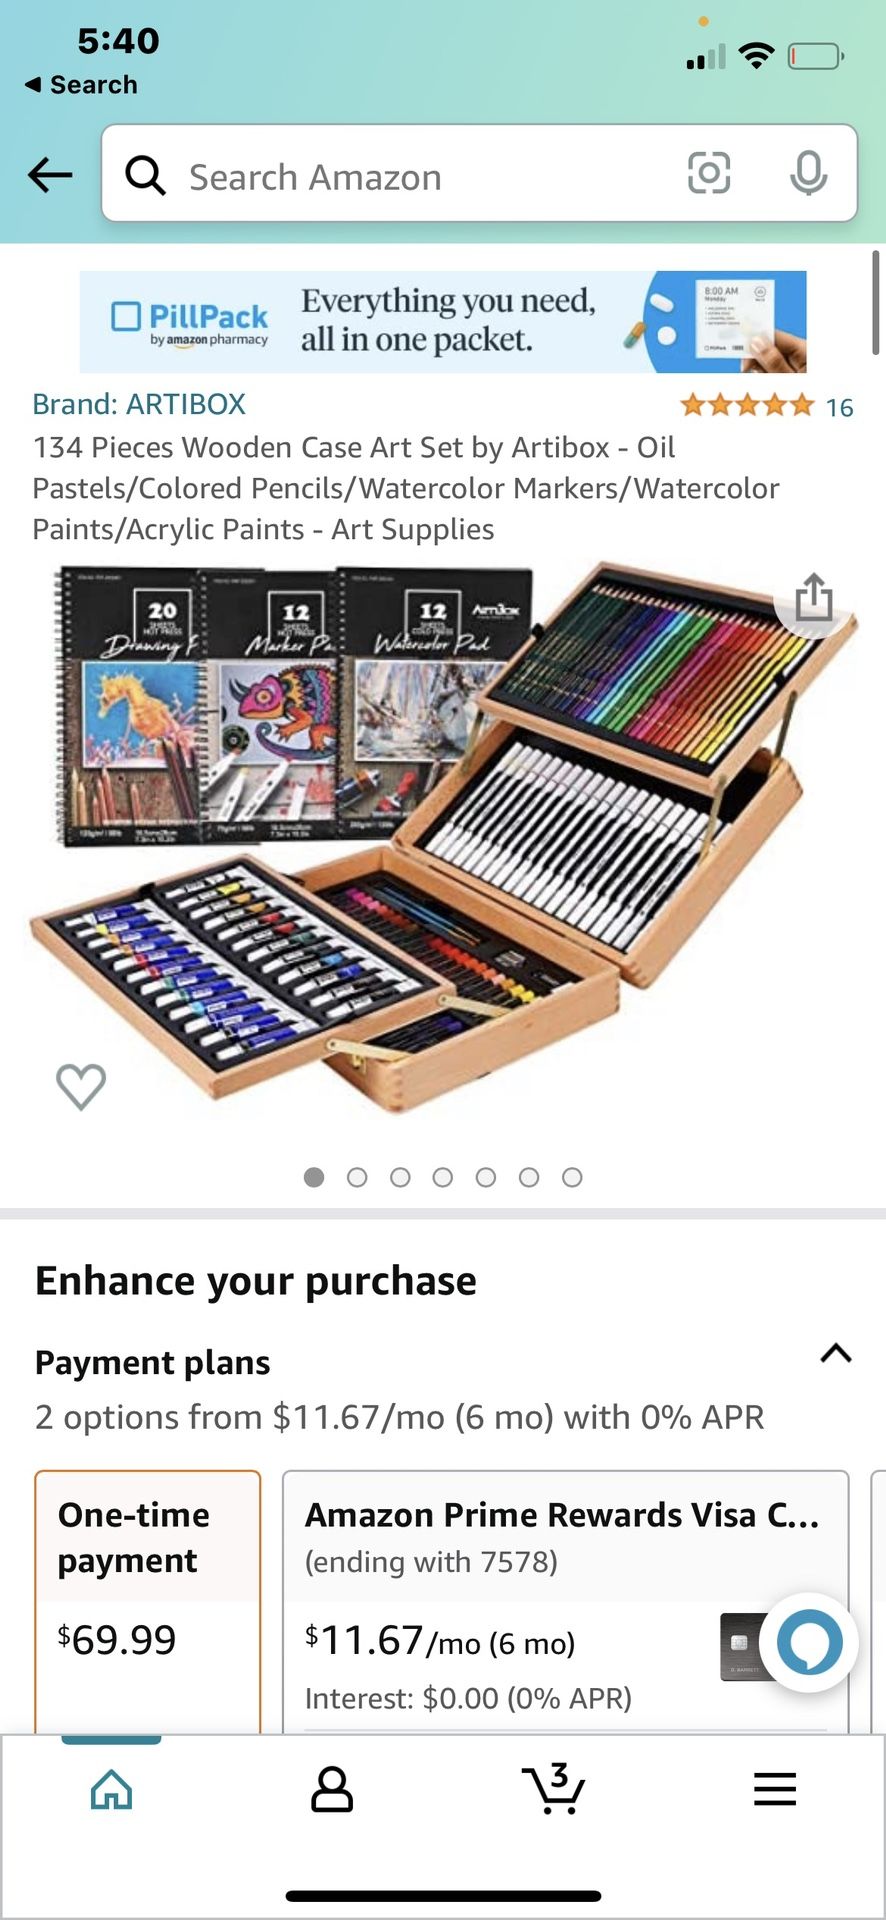 134 Pieces Wooden Case Art Set by Artibox - Oil Pastels/Colored Pencils/Watercolor Markers/Watercolor Paints/Acrylic Paints - Art Supplies